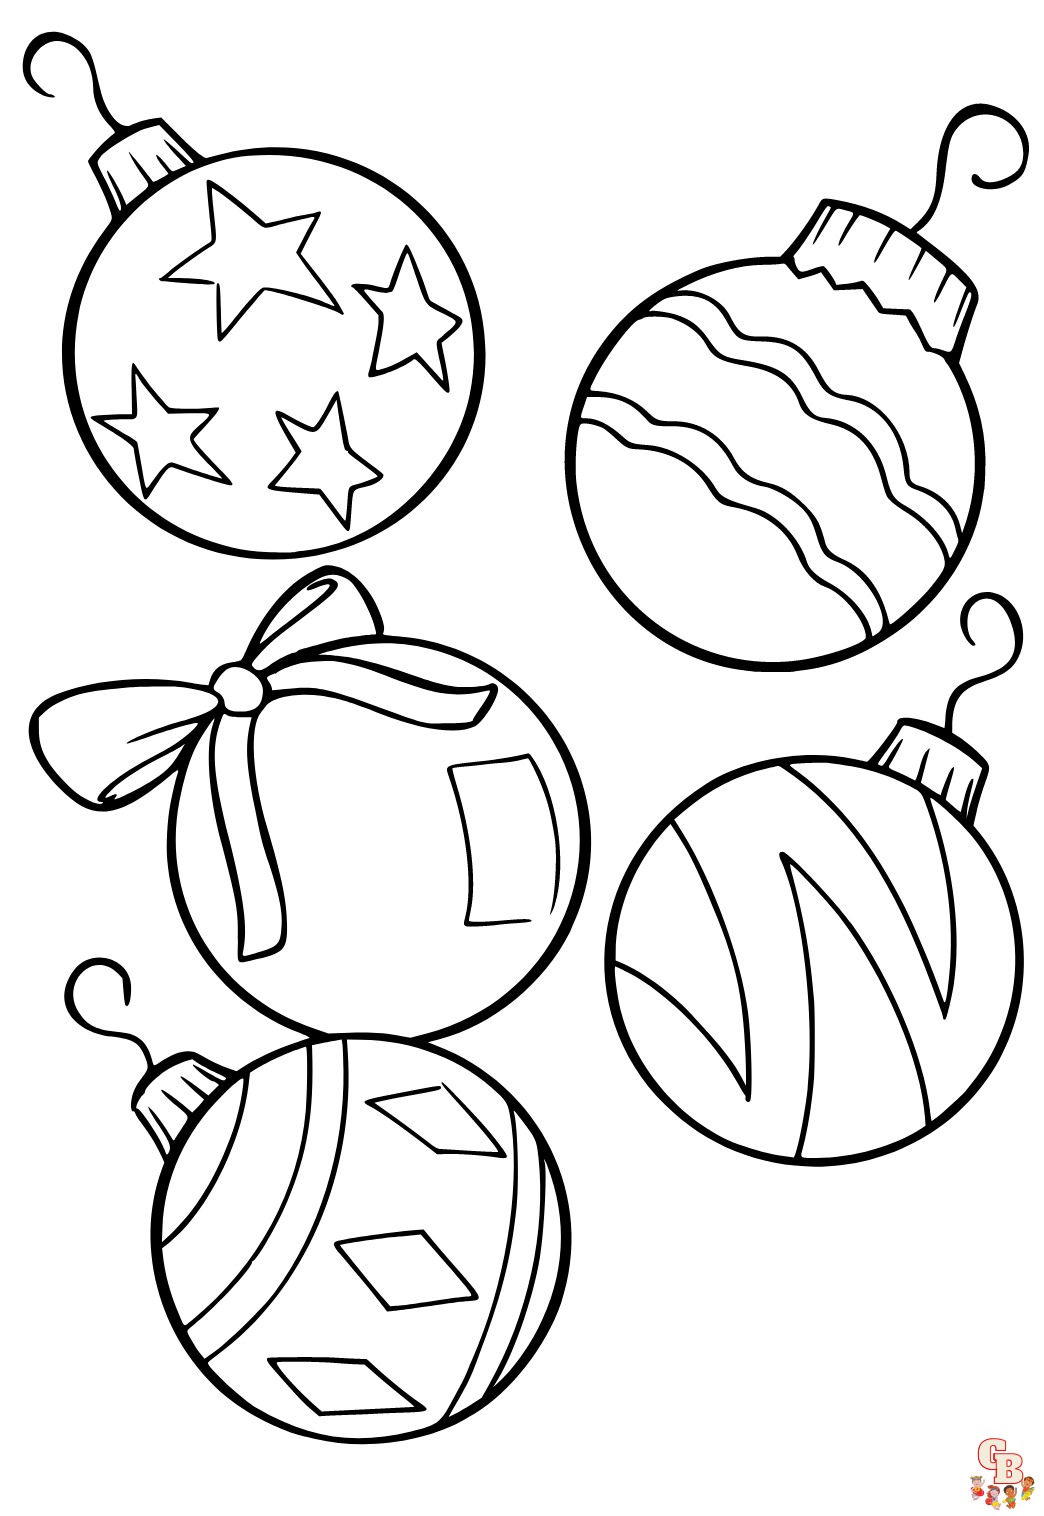 Bolas de Natal para colorir